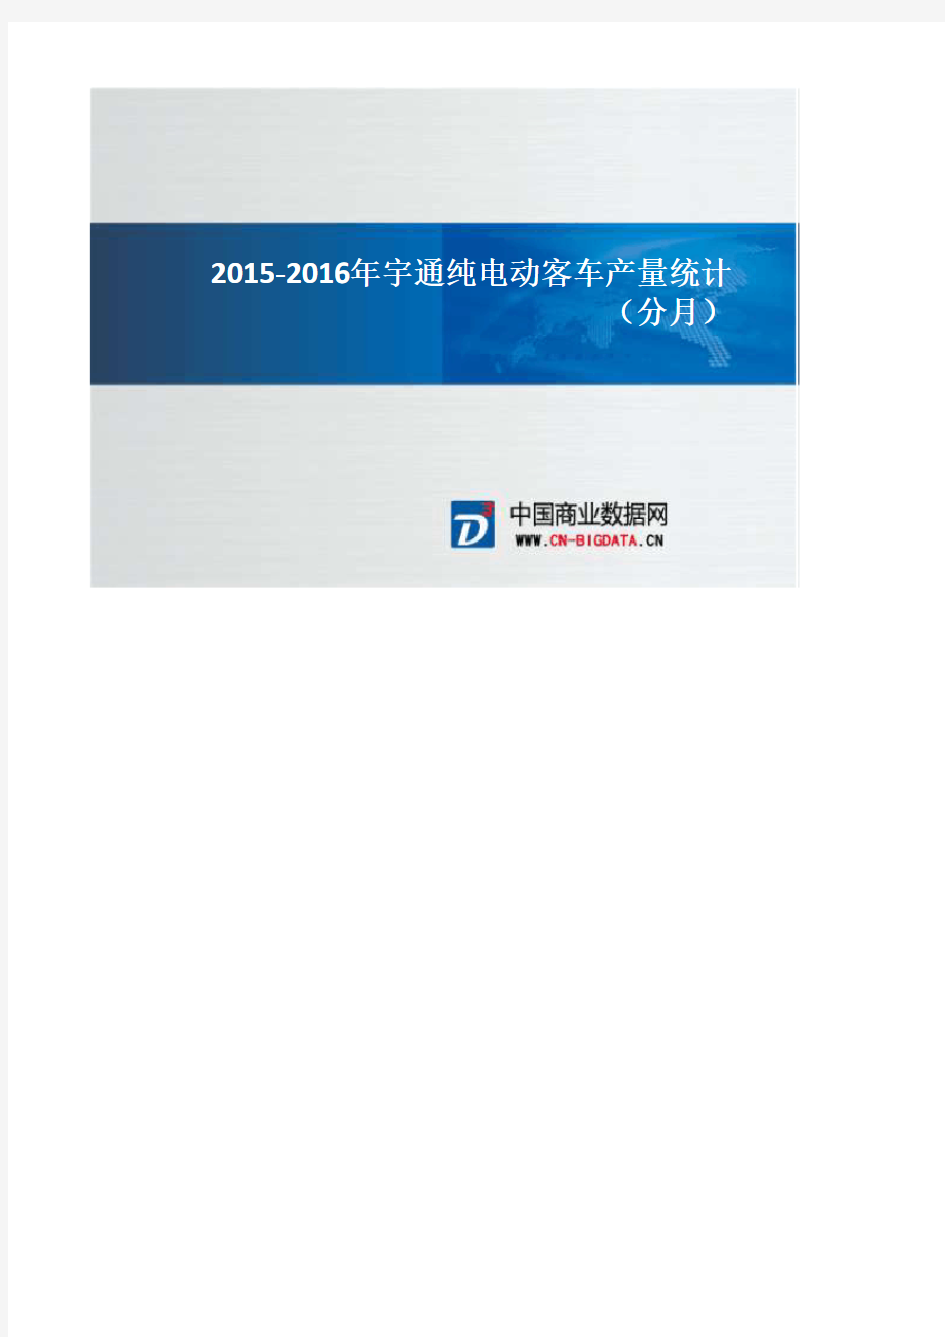 2015-2016年宇通纯电动客车产量统计(分月)